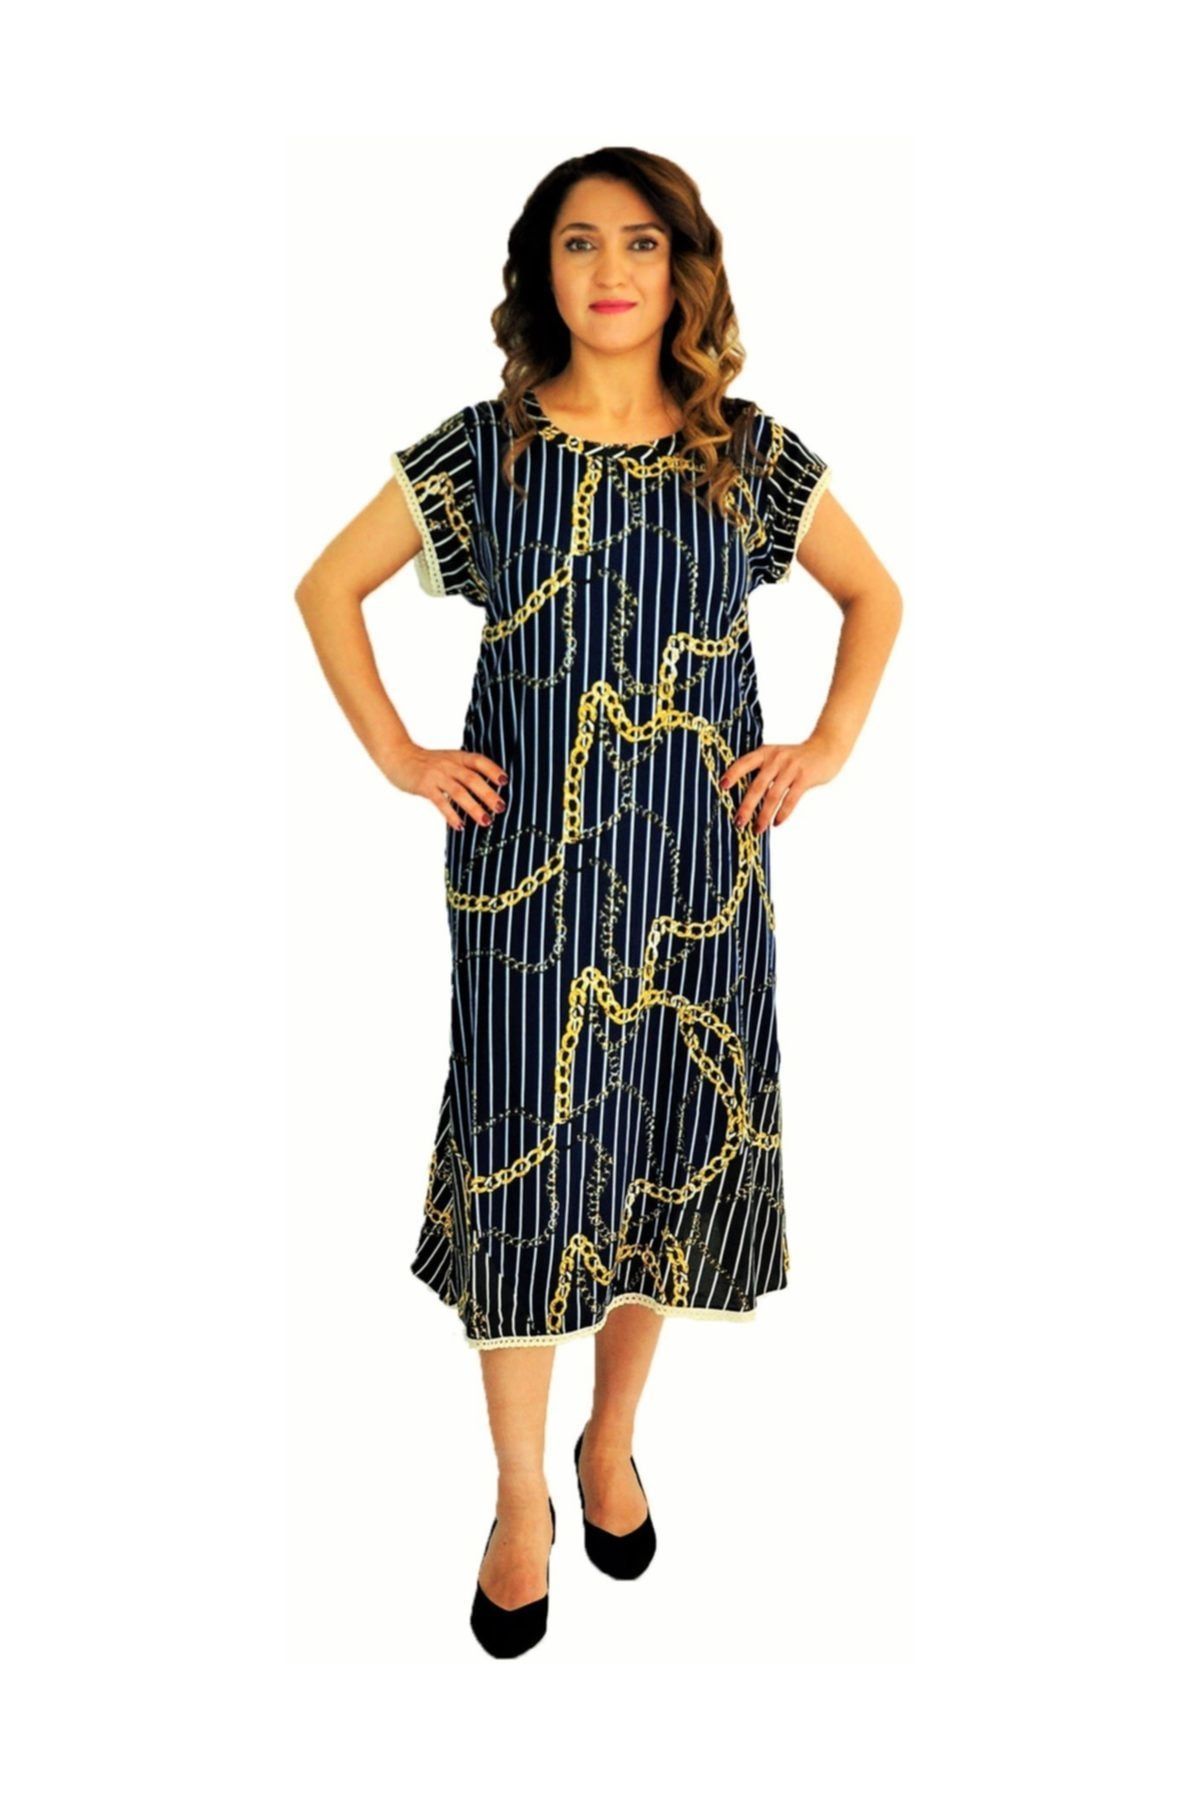 Dükkan Moda Kadın Büyük Beden Elbise Kısa Kollu Lacivert Zincir Desenli